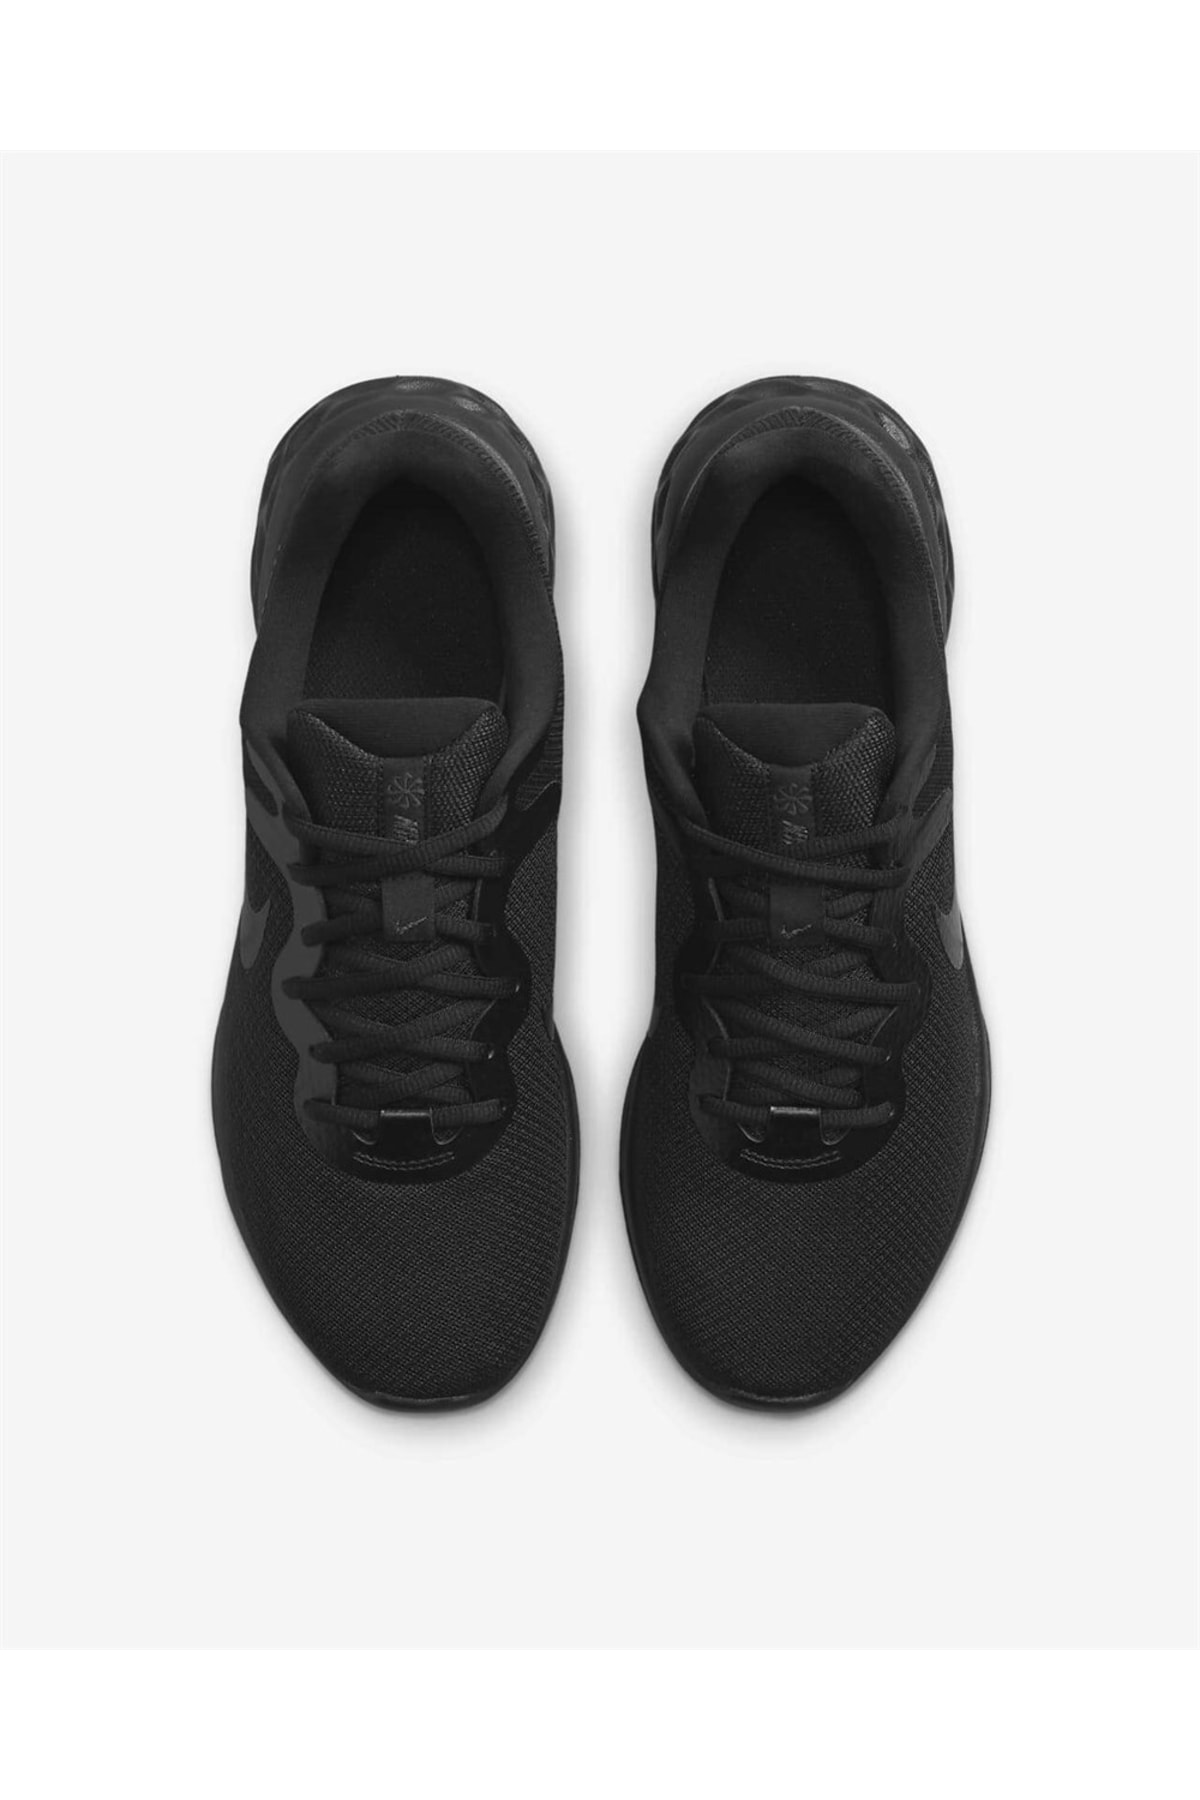 Nike Walkingschuh Schwarz Flacher Absatz Fast ausverkauft